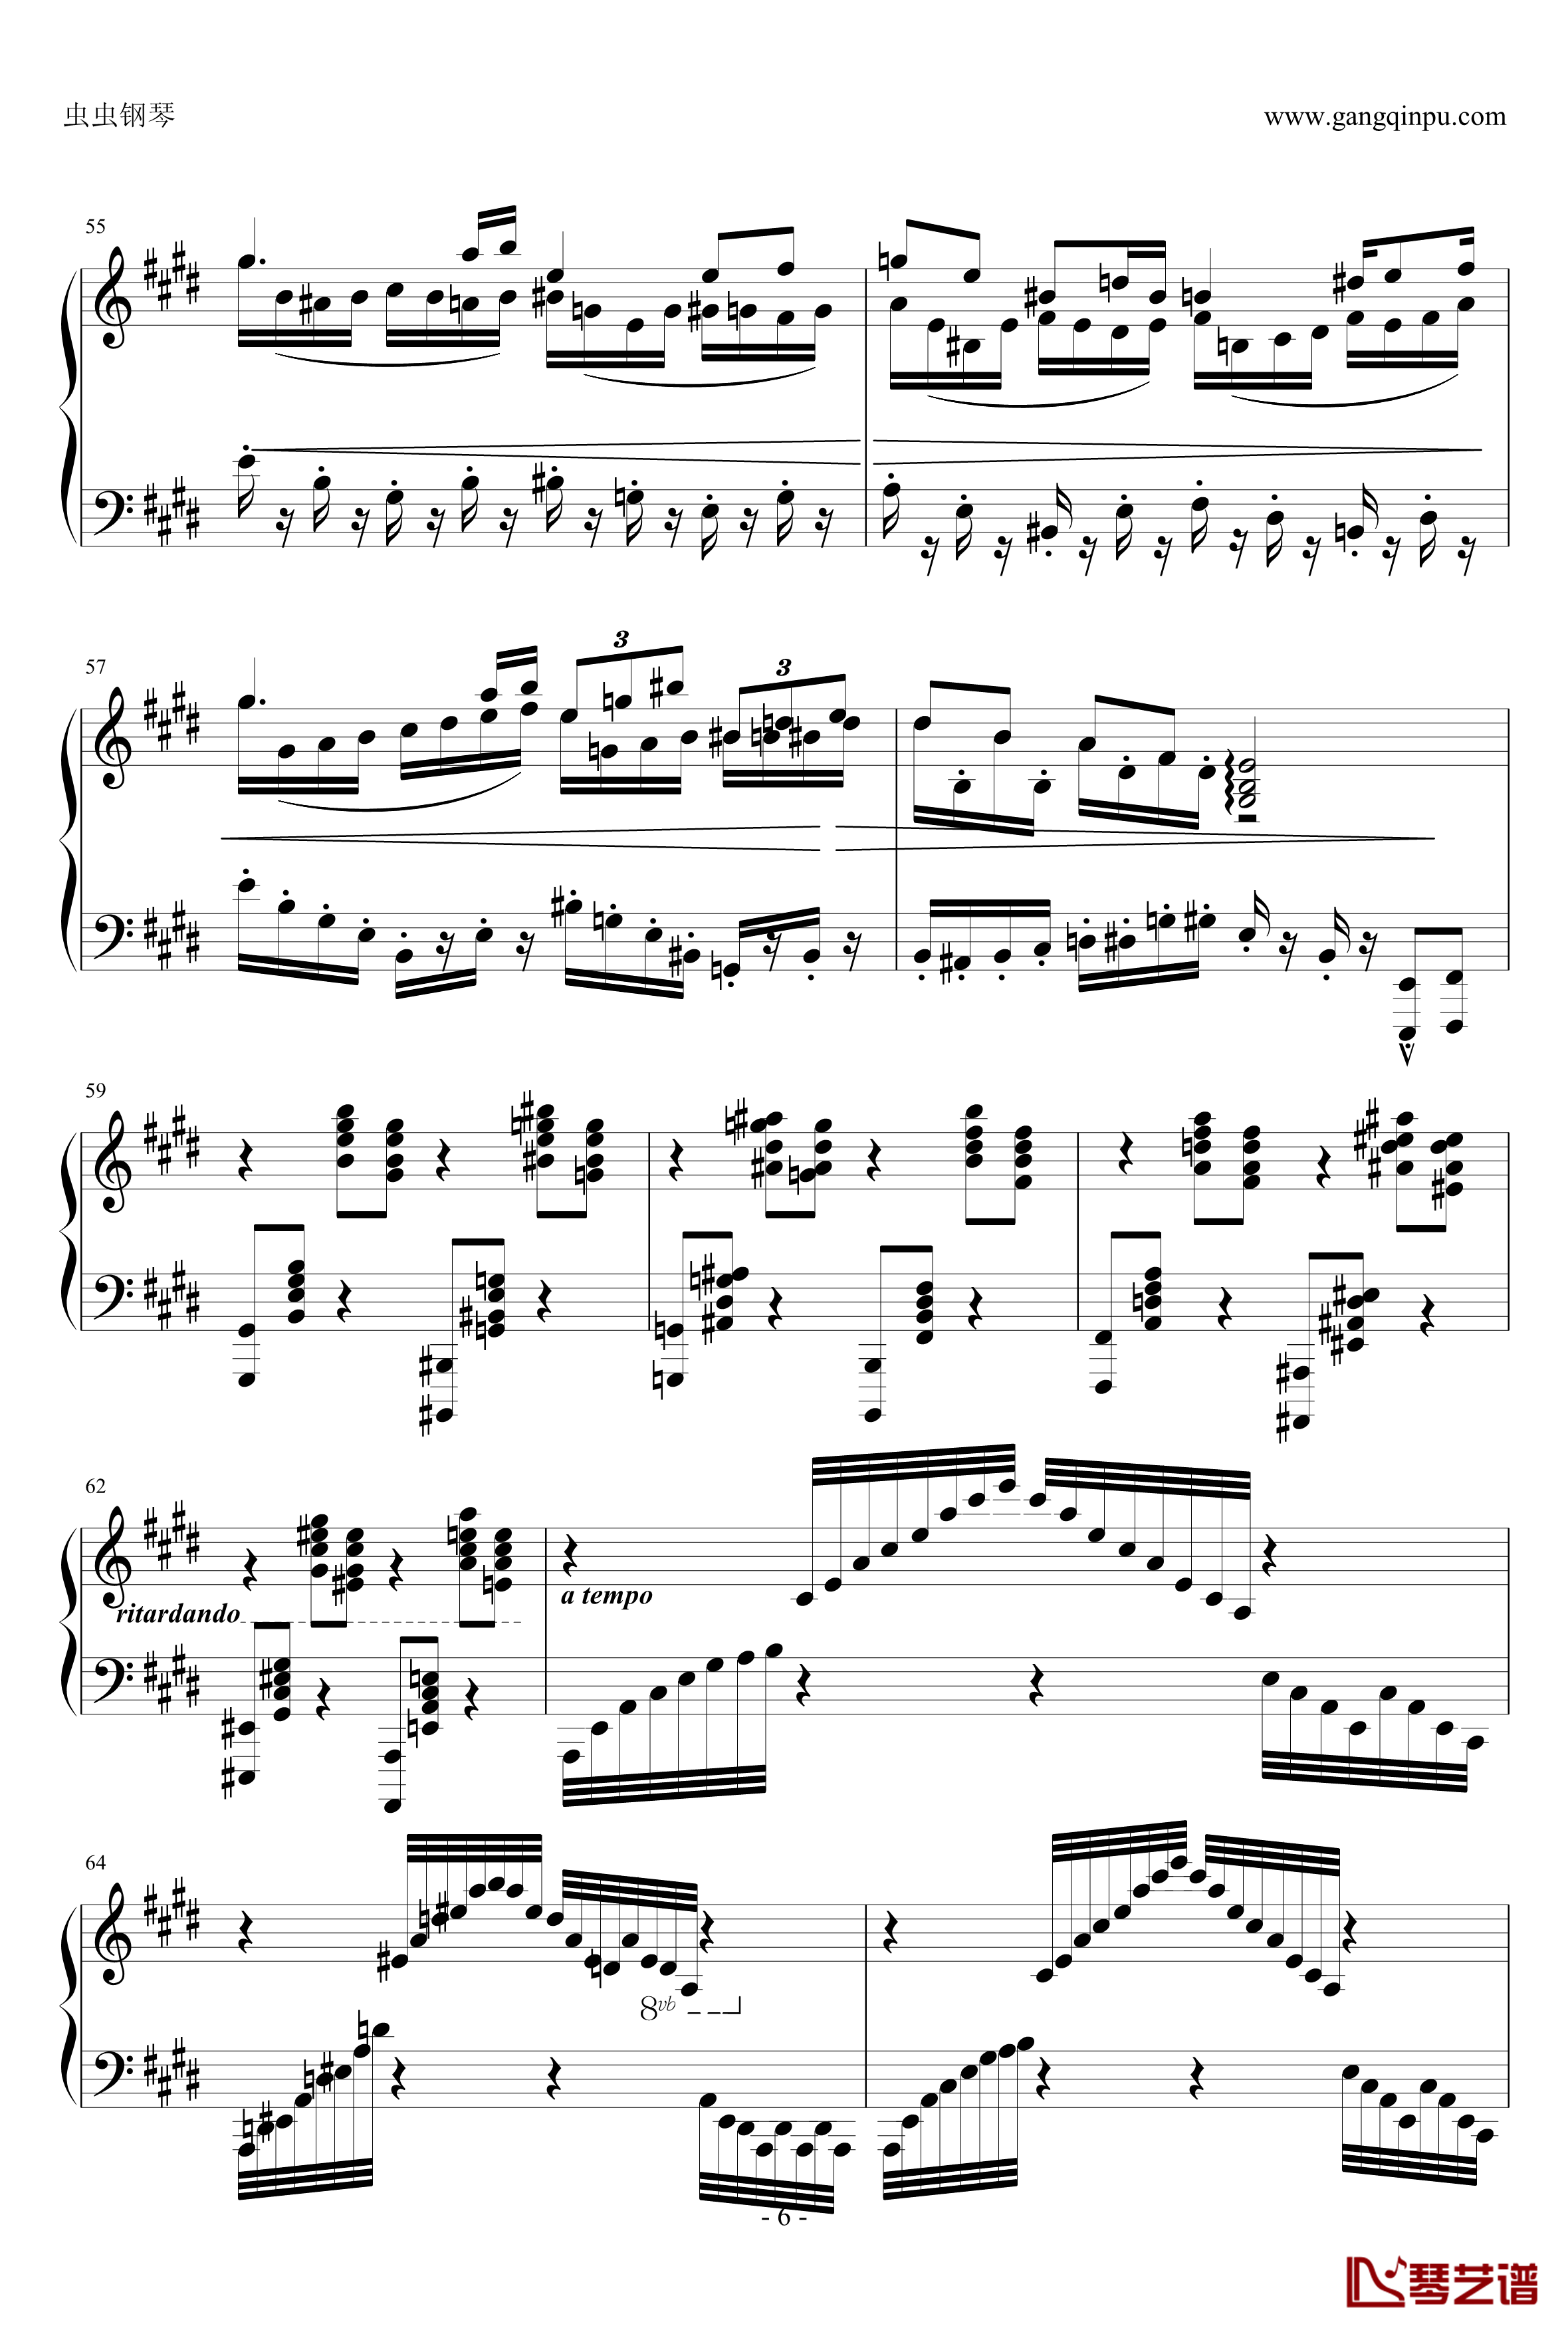 指尖上的梦想钢琴谱-E大调奏鸣曲-airoad6